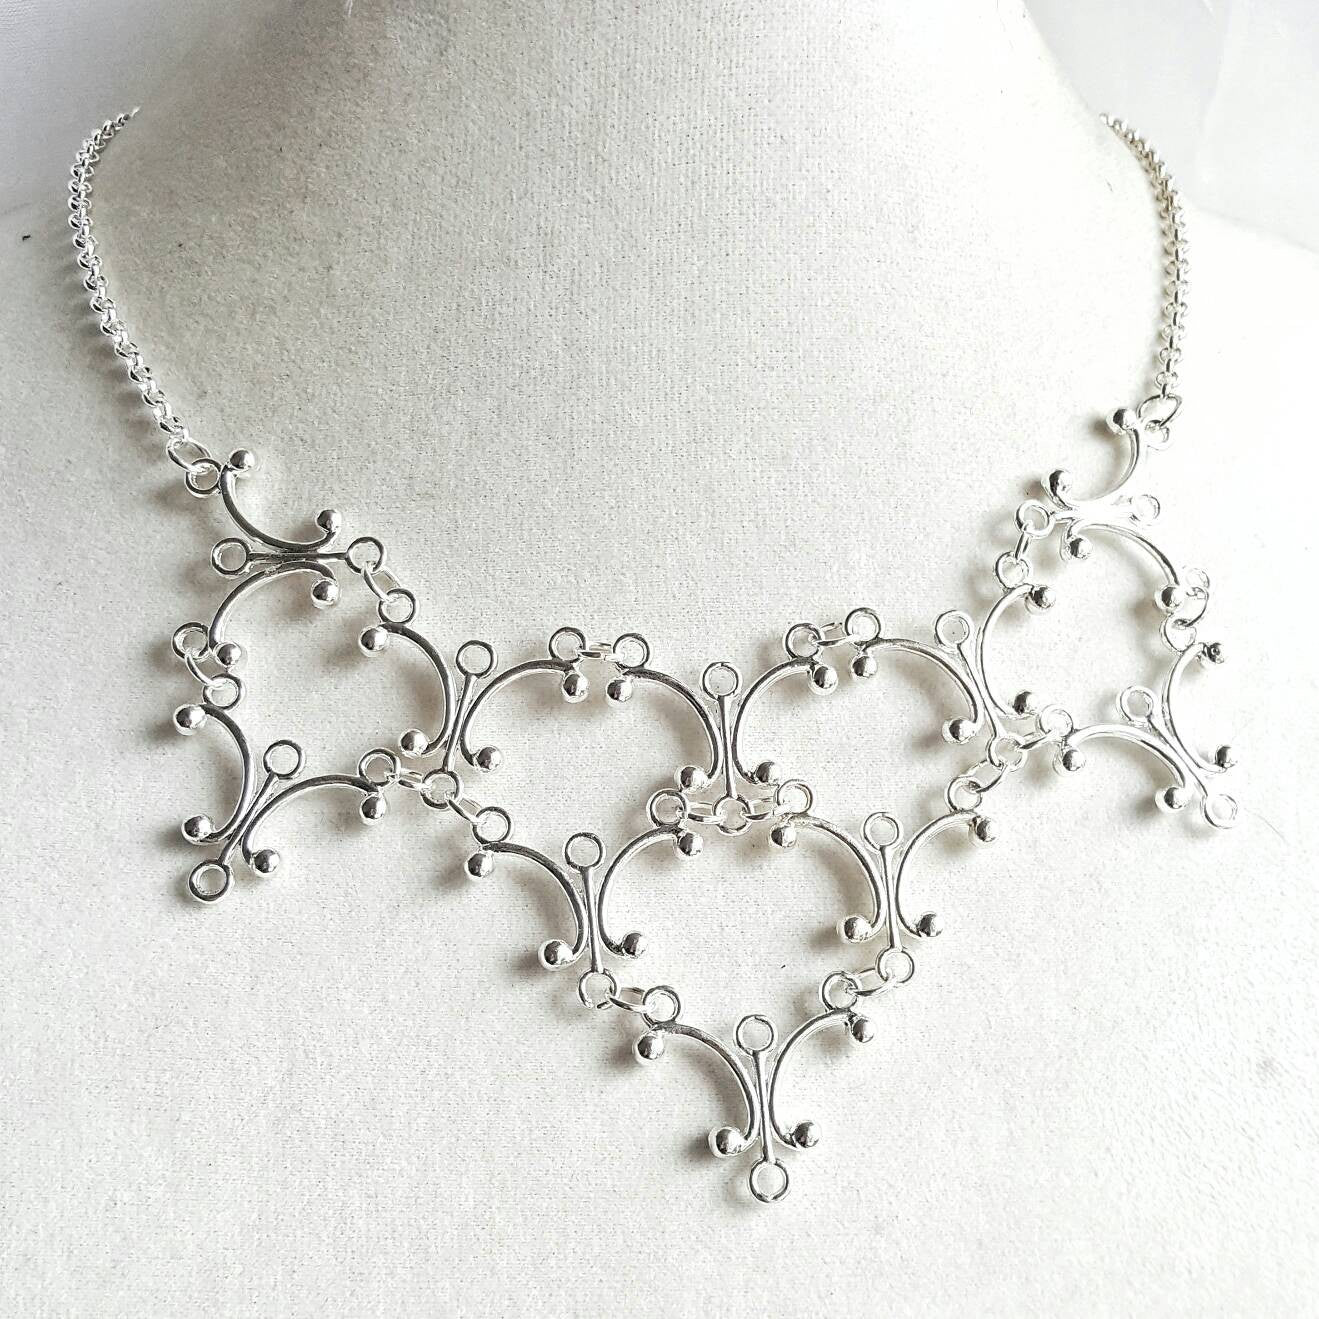 Silver Gothic Necklace - Neo Victorian Goth Jewelry - Ren Faire - Handfasting - Queen Costume - Gothic Lolita - Handmade Statement Necklace - DRAVYNMOOR